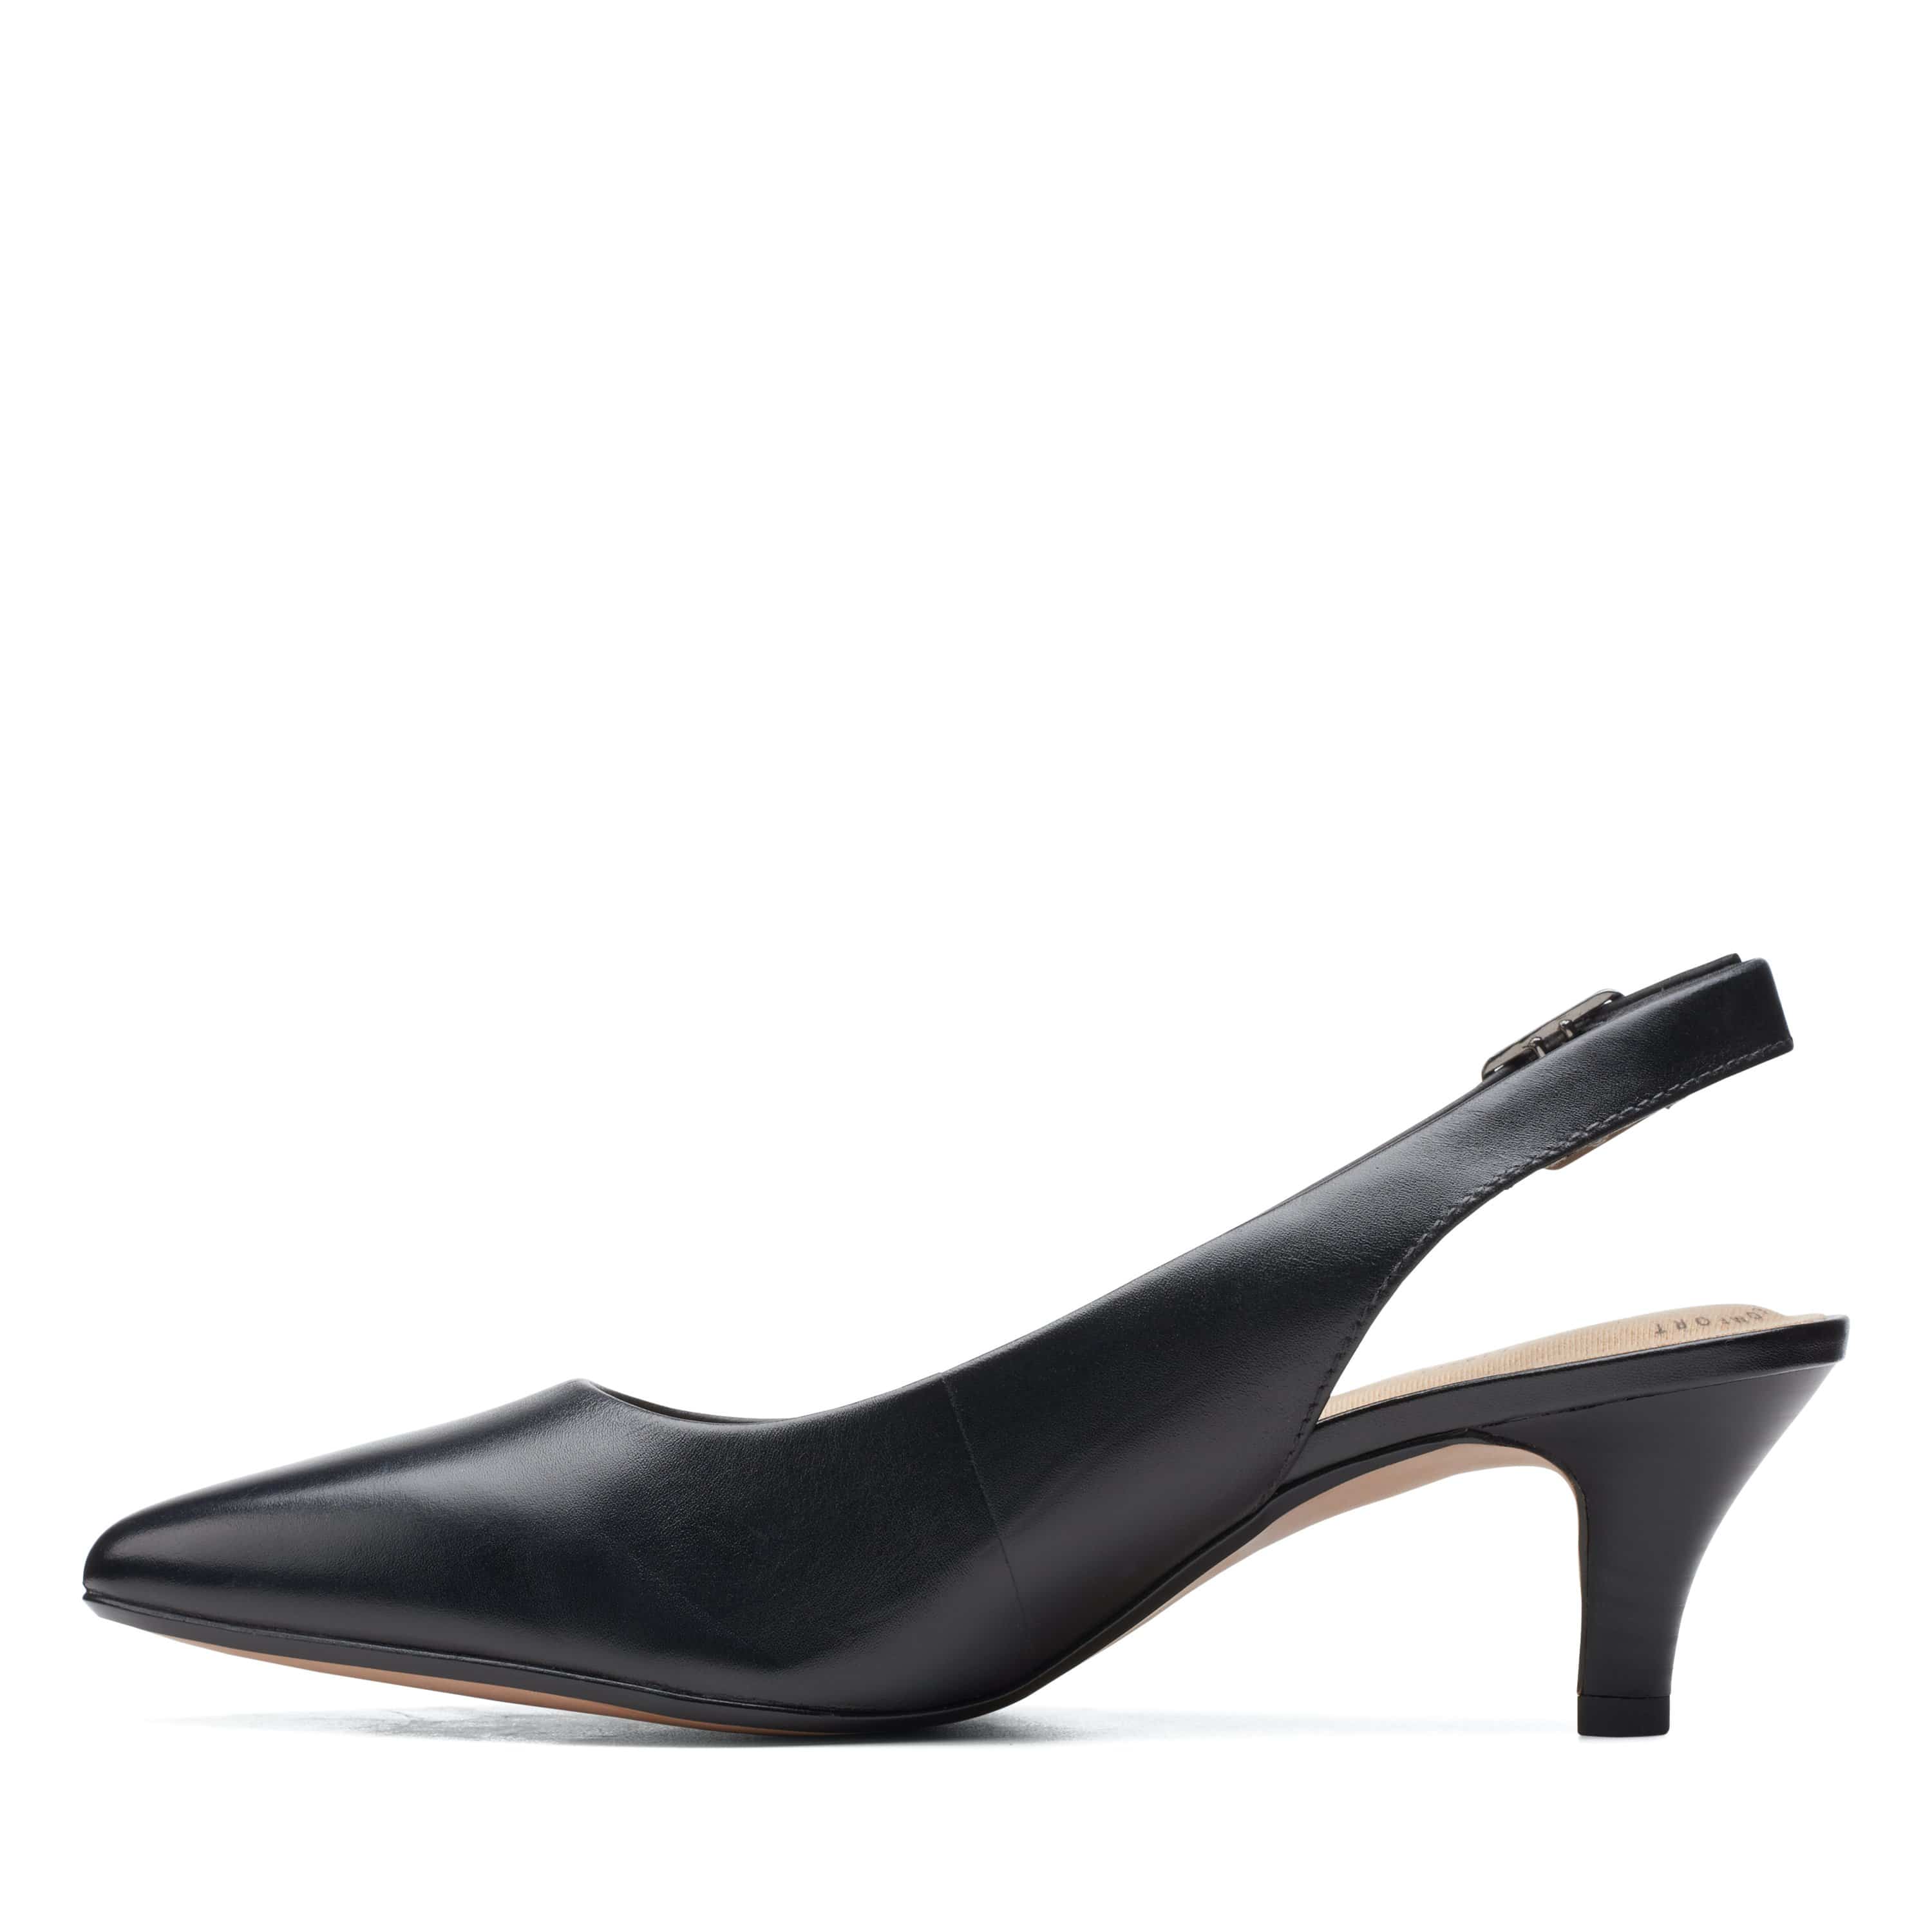 Clarks Linvale Sondra - Shoes - Black Leather - 261532304 - D Width (Standard Fit)